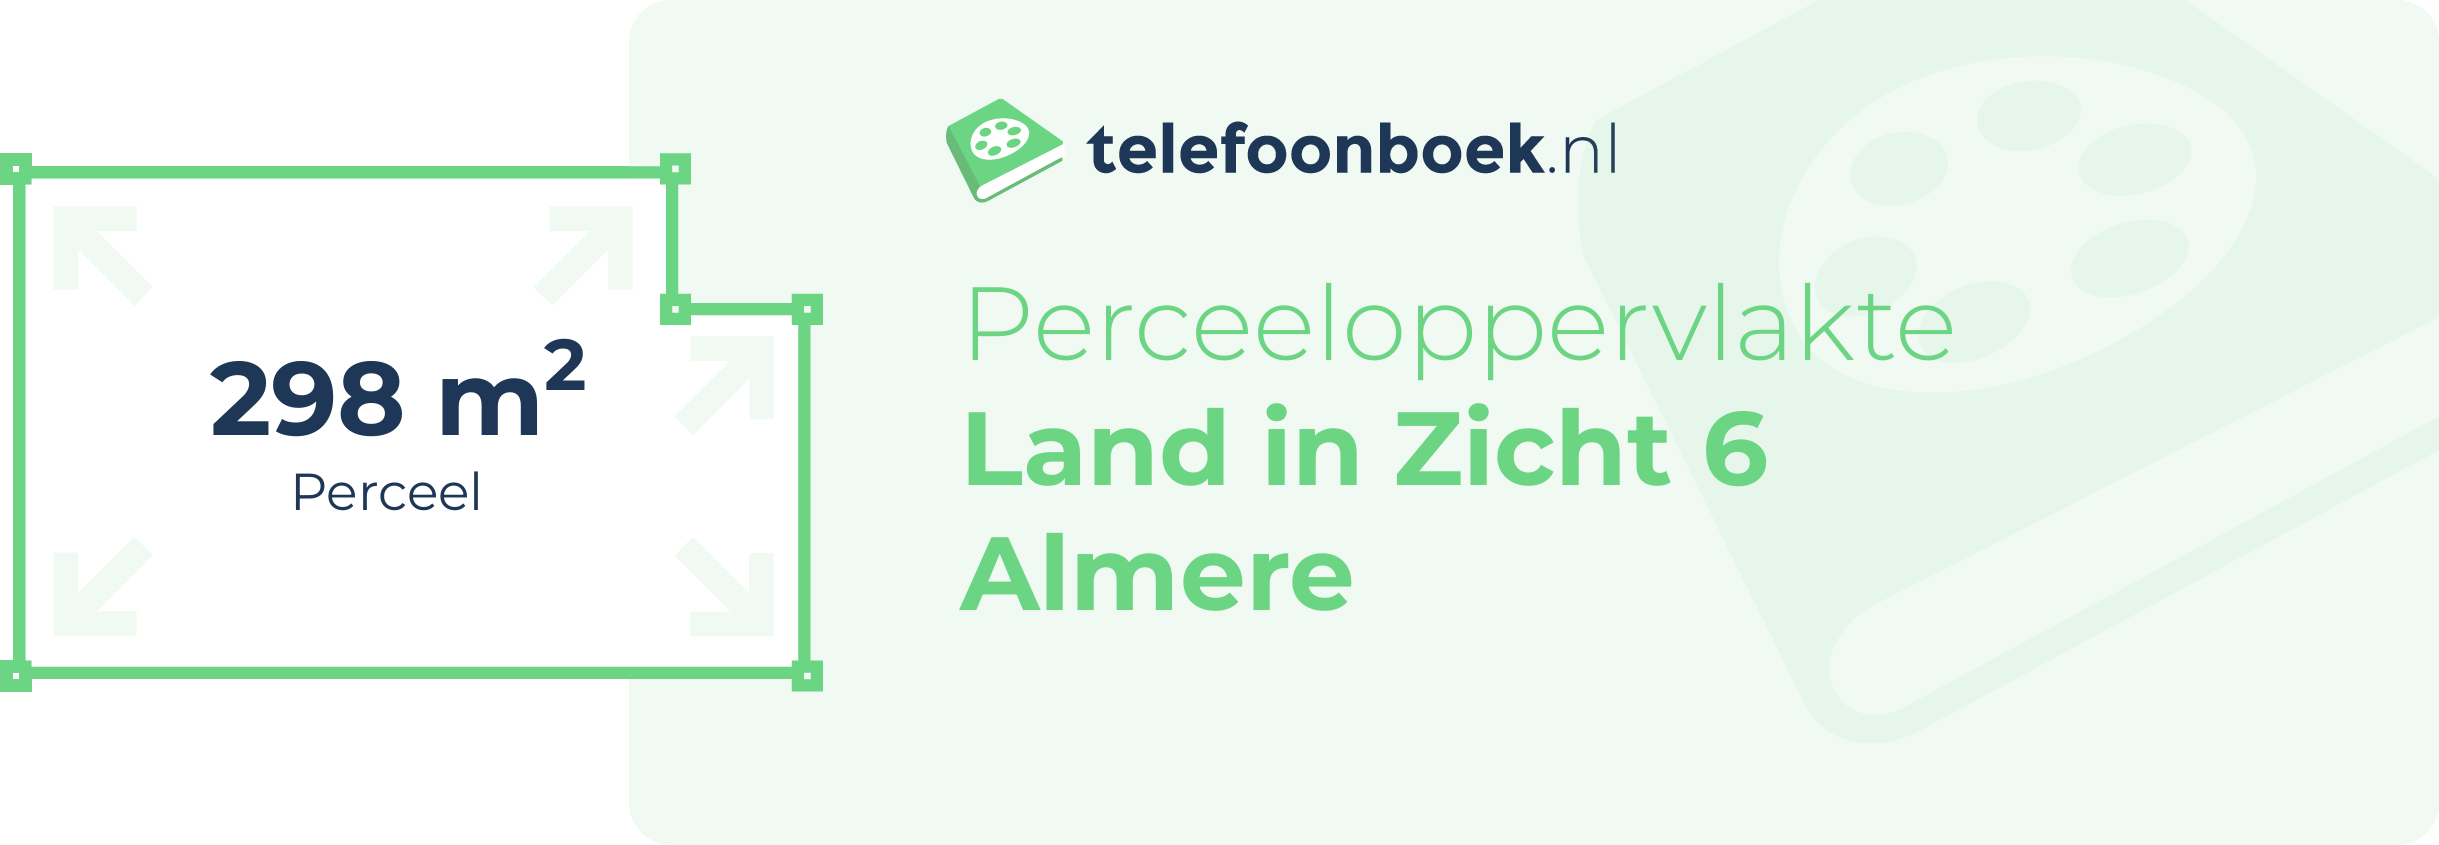 Perceeloppervlakte Land In Zicht 6 Almere